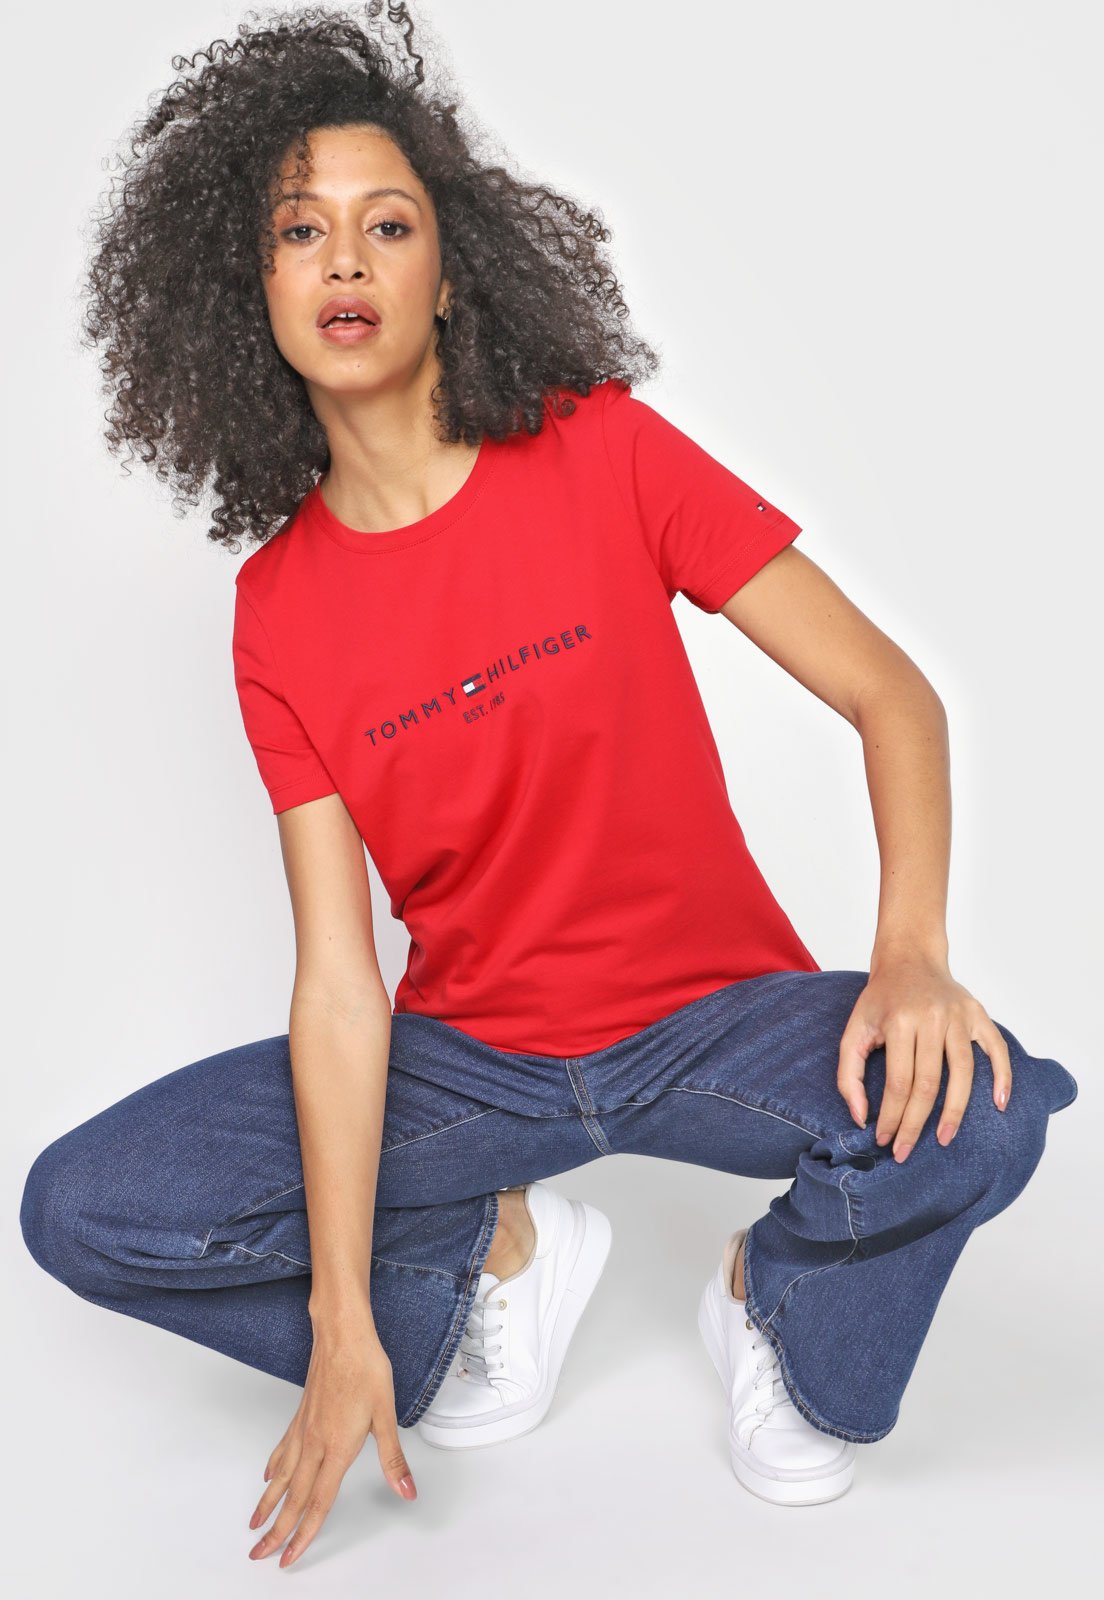 Camiseta Basica Tommy Hilfiger - Vermelho - logo Bordado - Zeus Select